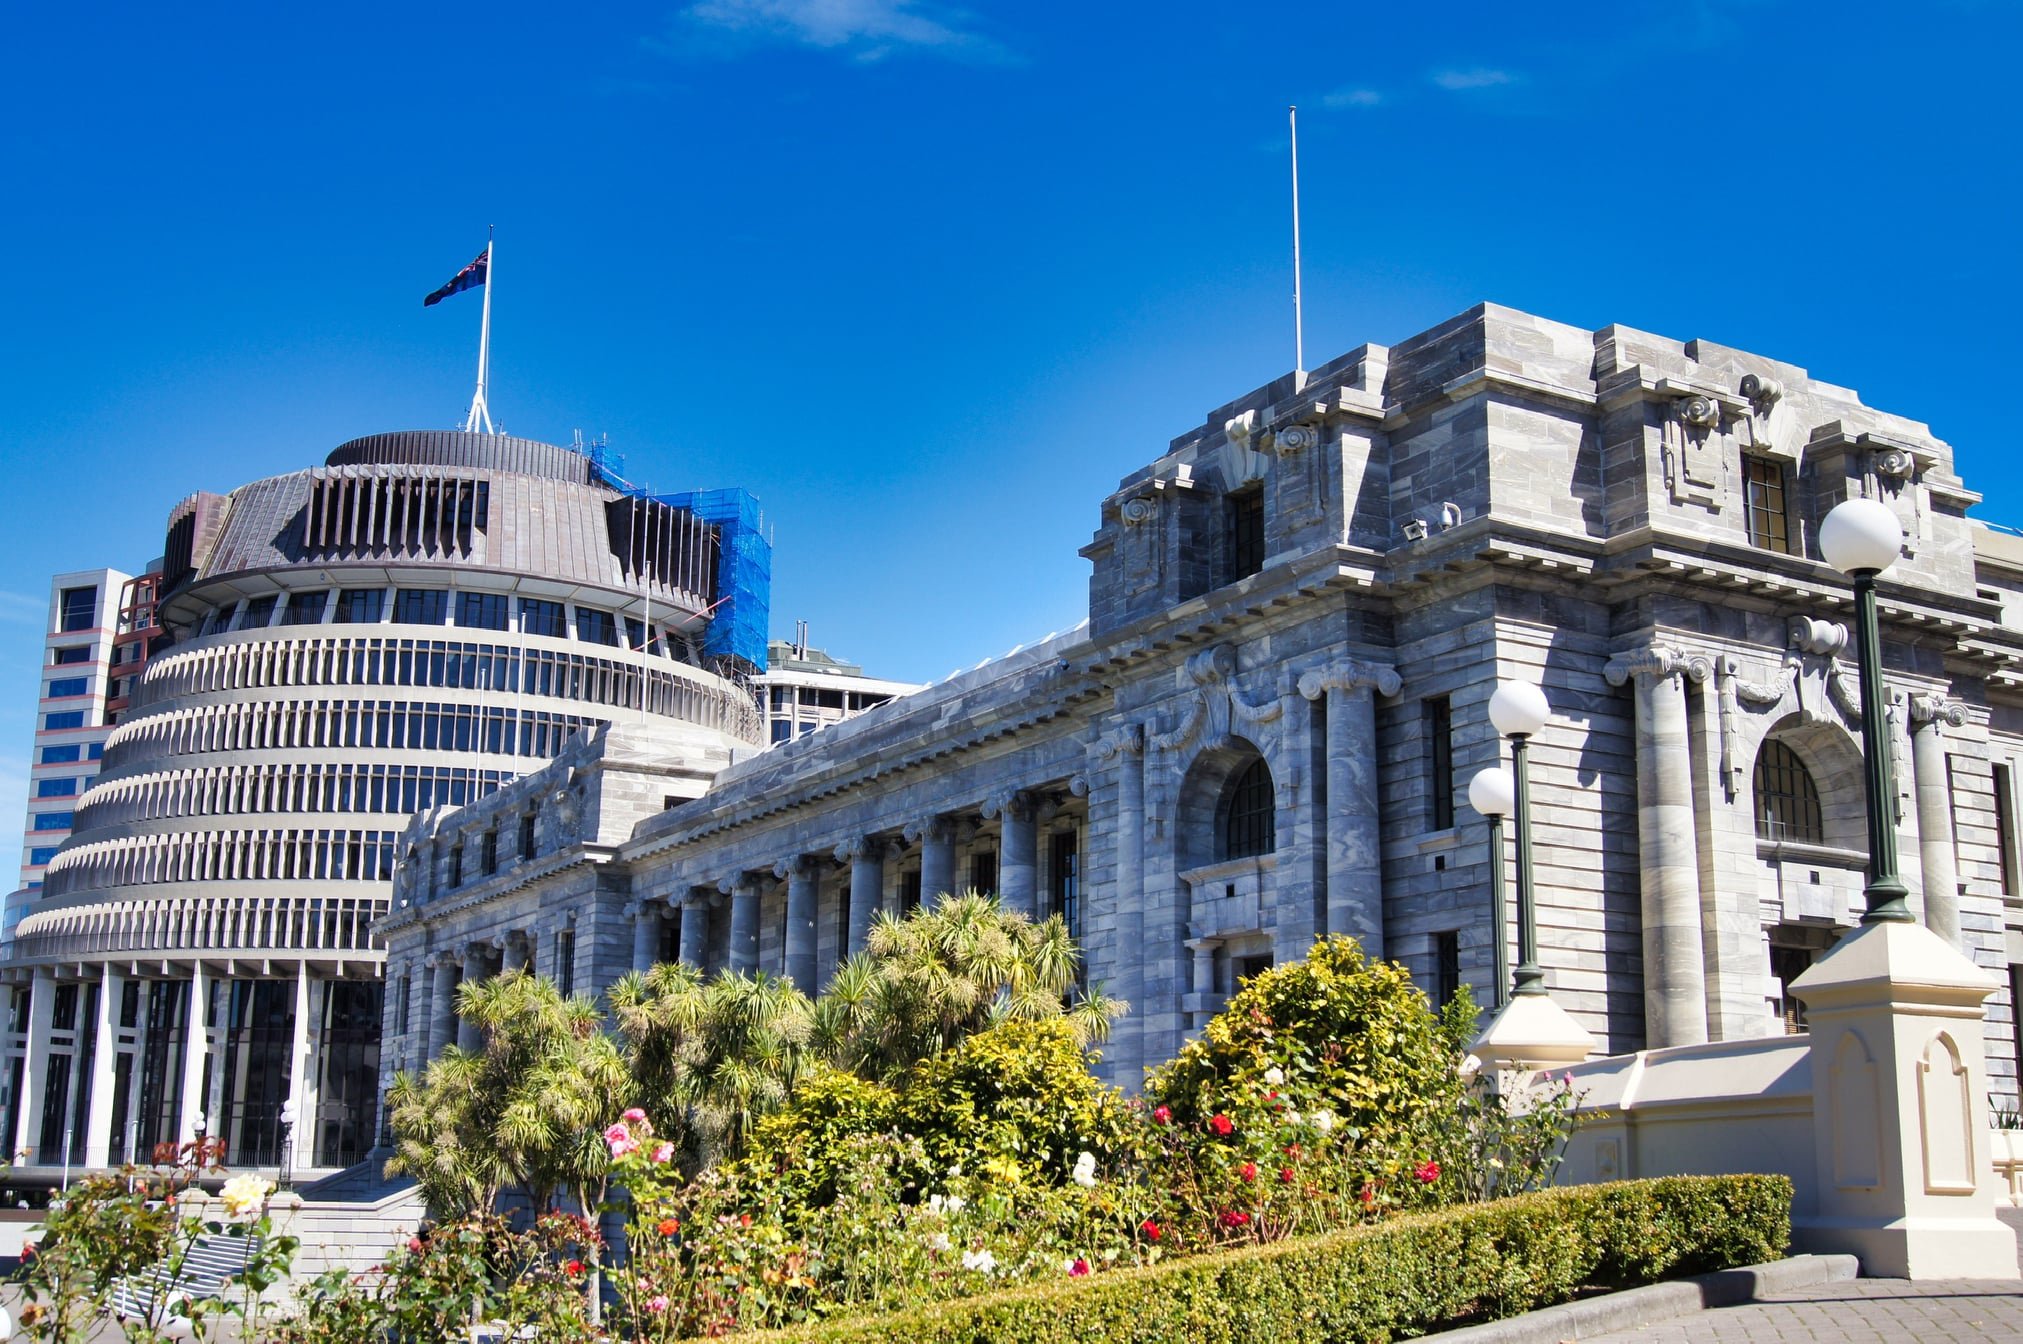 ウェリントン ニュージーランドの首都。洗練された都市で、政治・文化の中心でもある。学生の街ということもあり、とても活気に満ちている。風が強いこともでも有名。